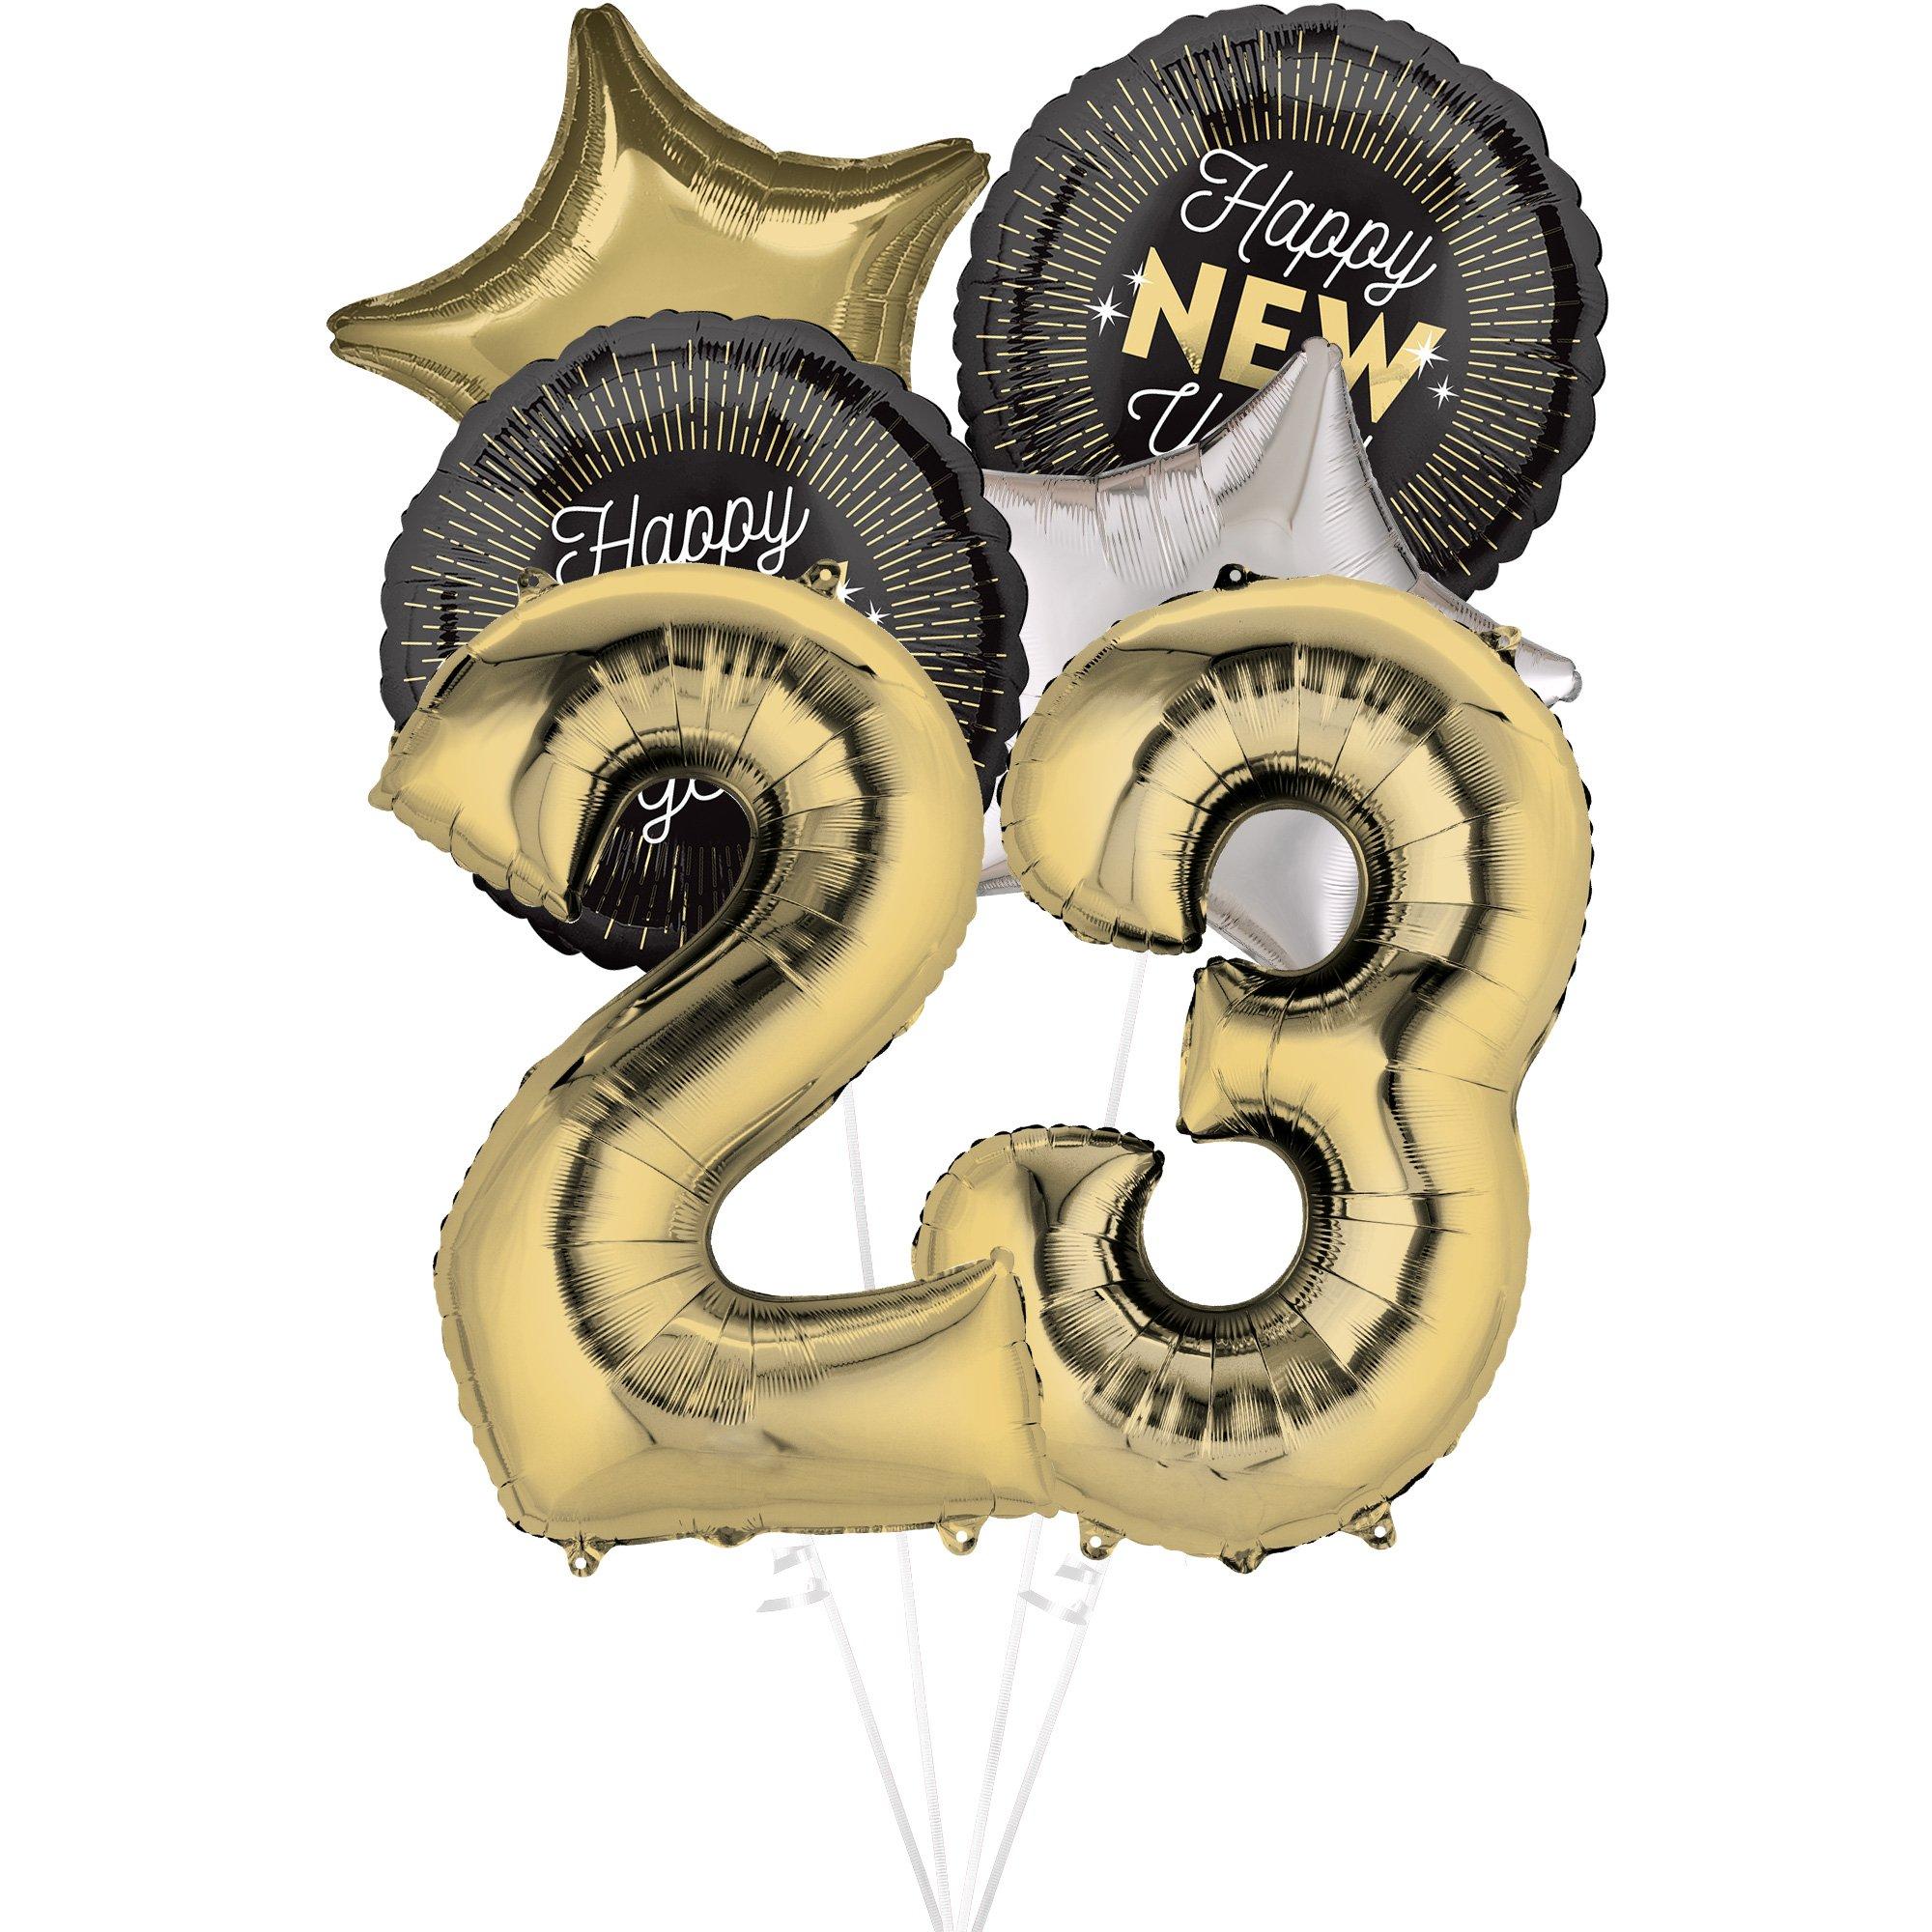 Ambacht Vruchtbaar Immuniseren White Gold 23 New Year Balloon Bouquet, 6pc | Party City